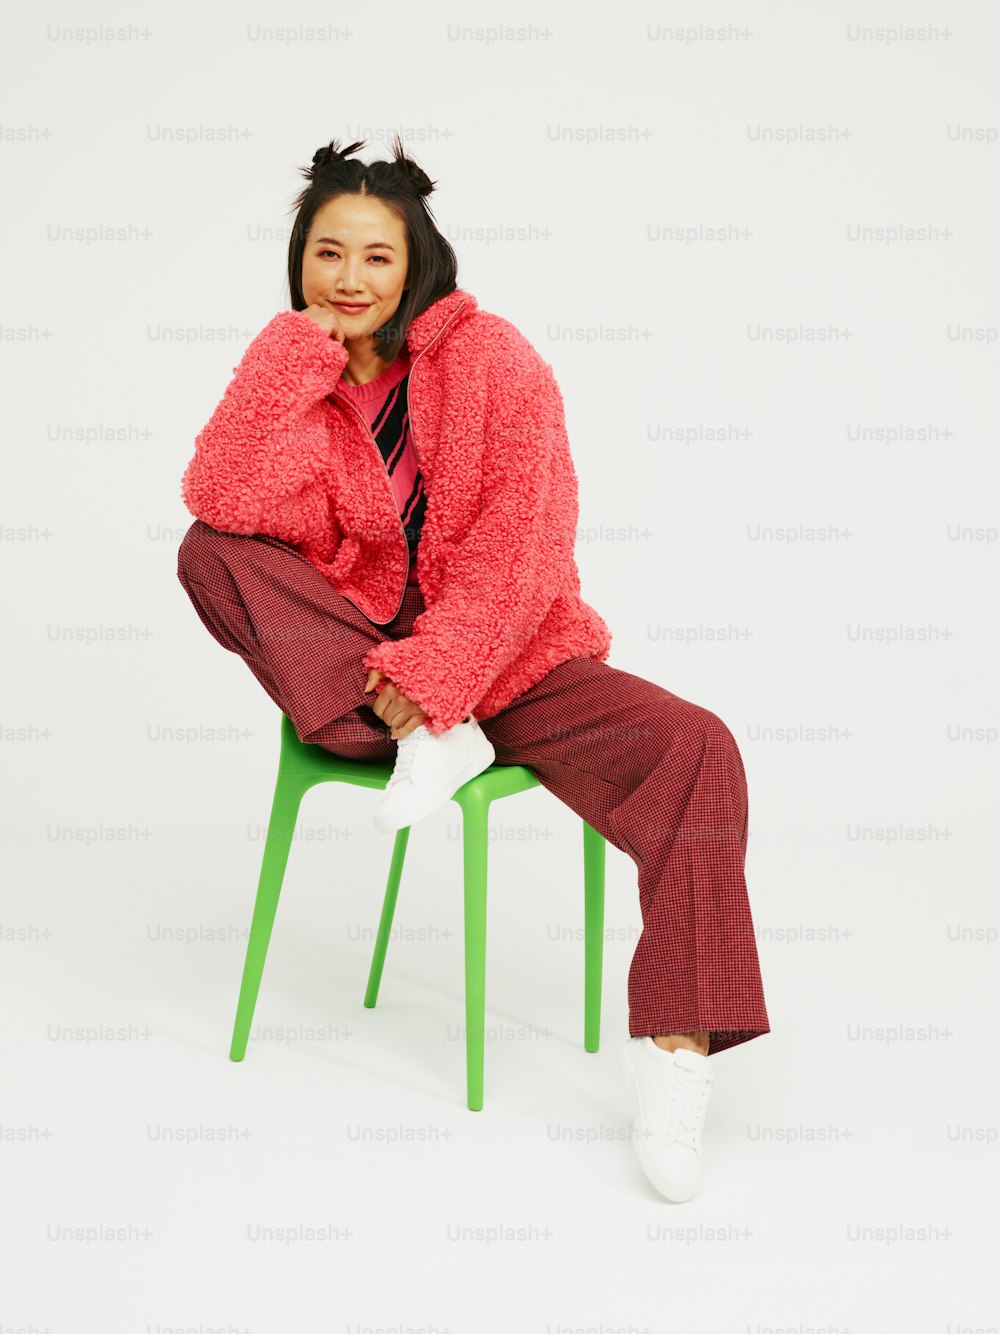 Eine Frau sitzt auf einem grünen Stuhl